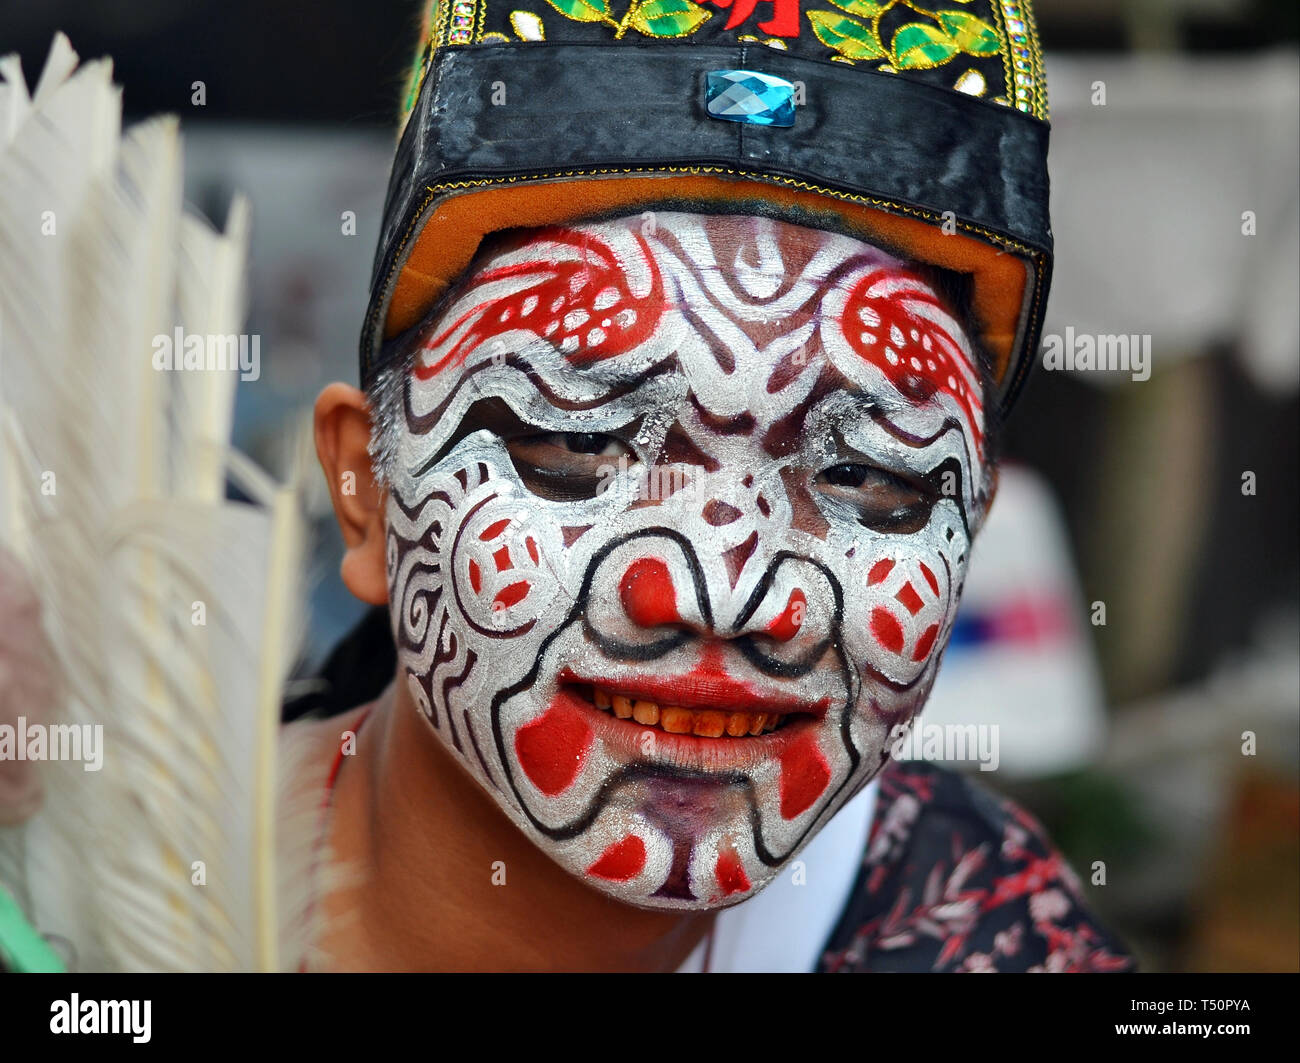 Betelnut-masticare giovane uomo di Taiwan con il rosso-denti macchiati (street interprete di una troupe zhentou) ha il suo volto dipinto con una elaborata maschera facciale. Foto Stock